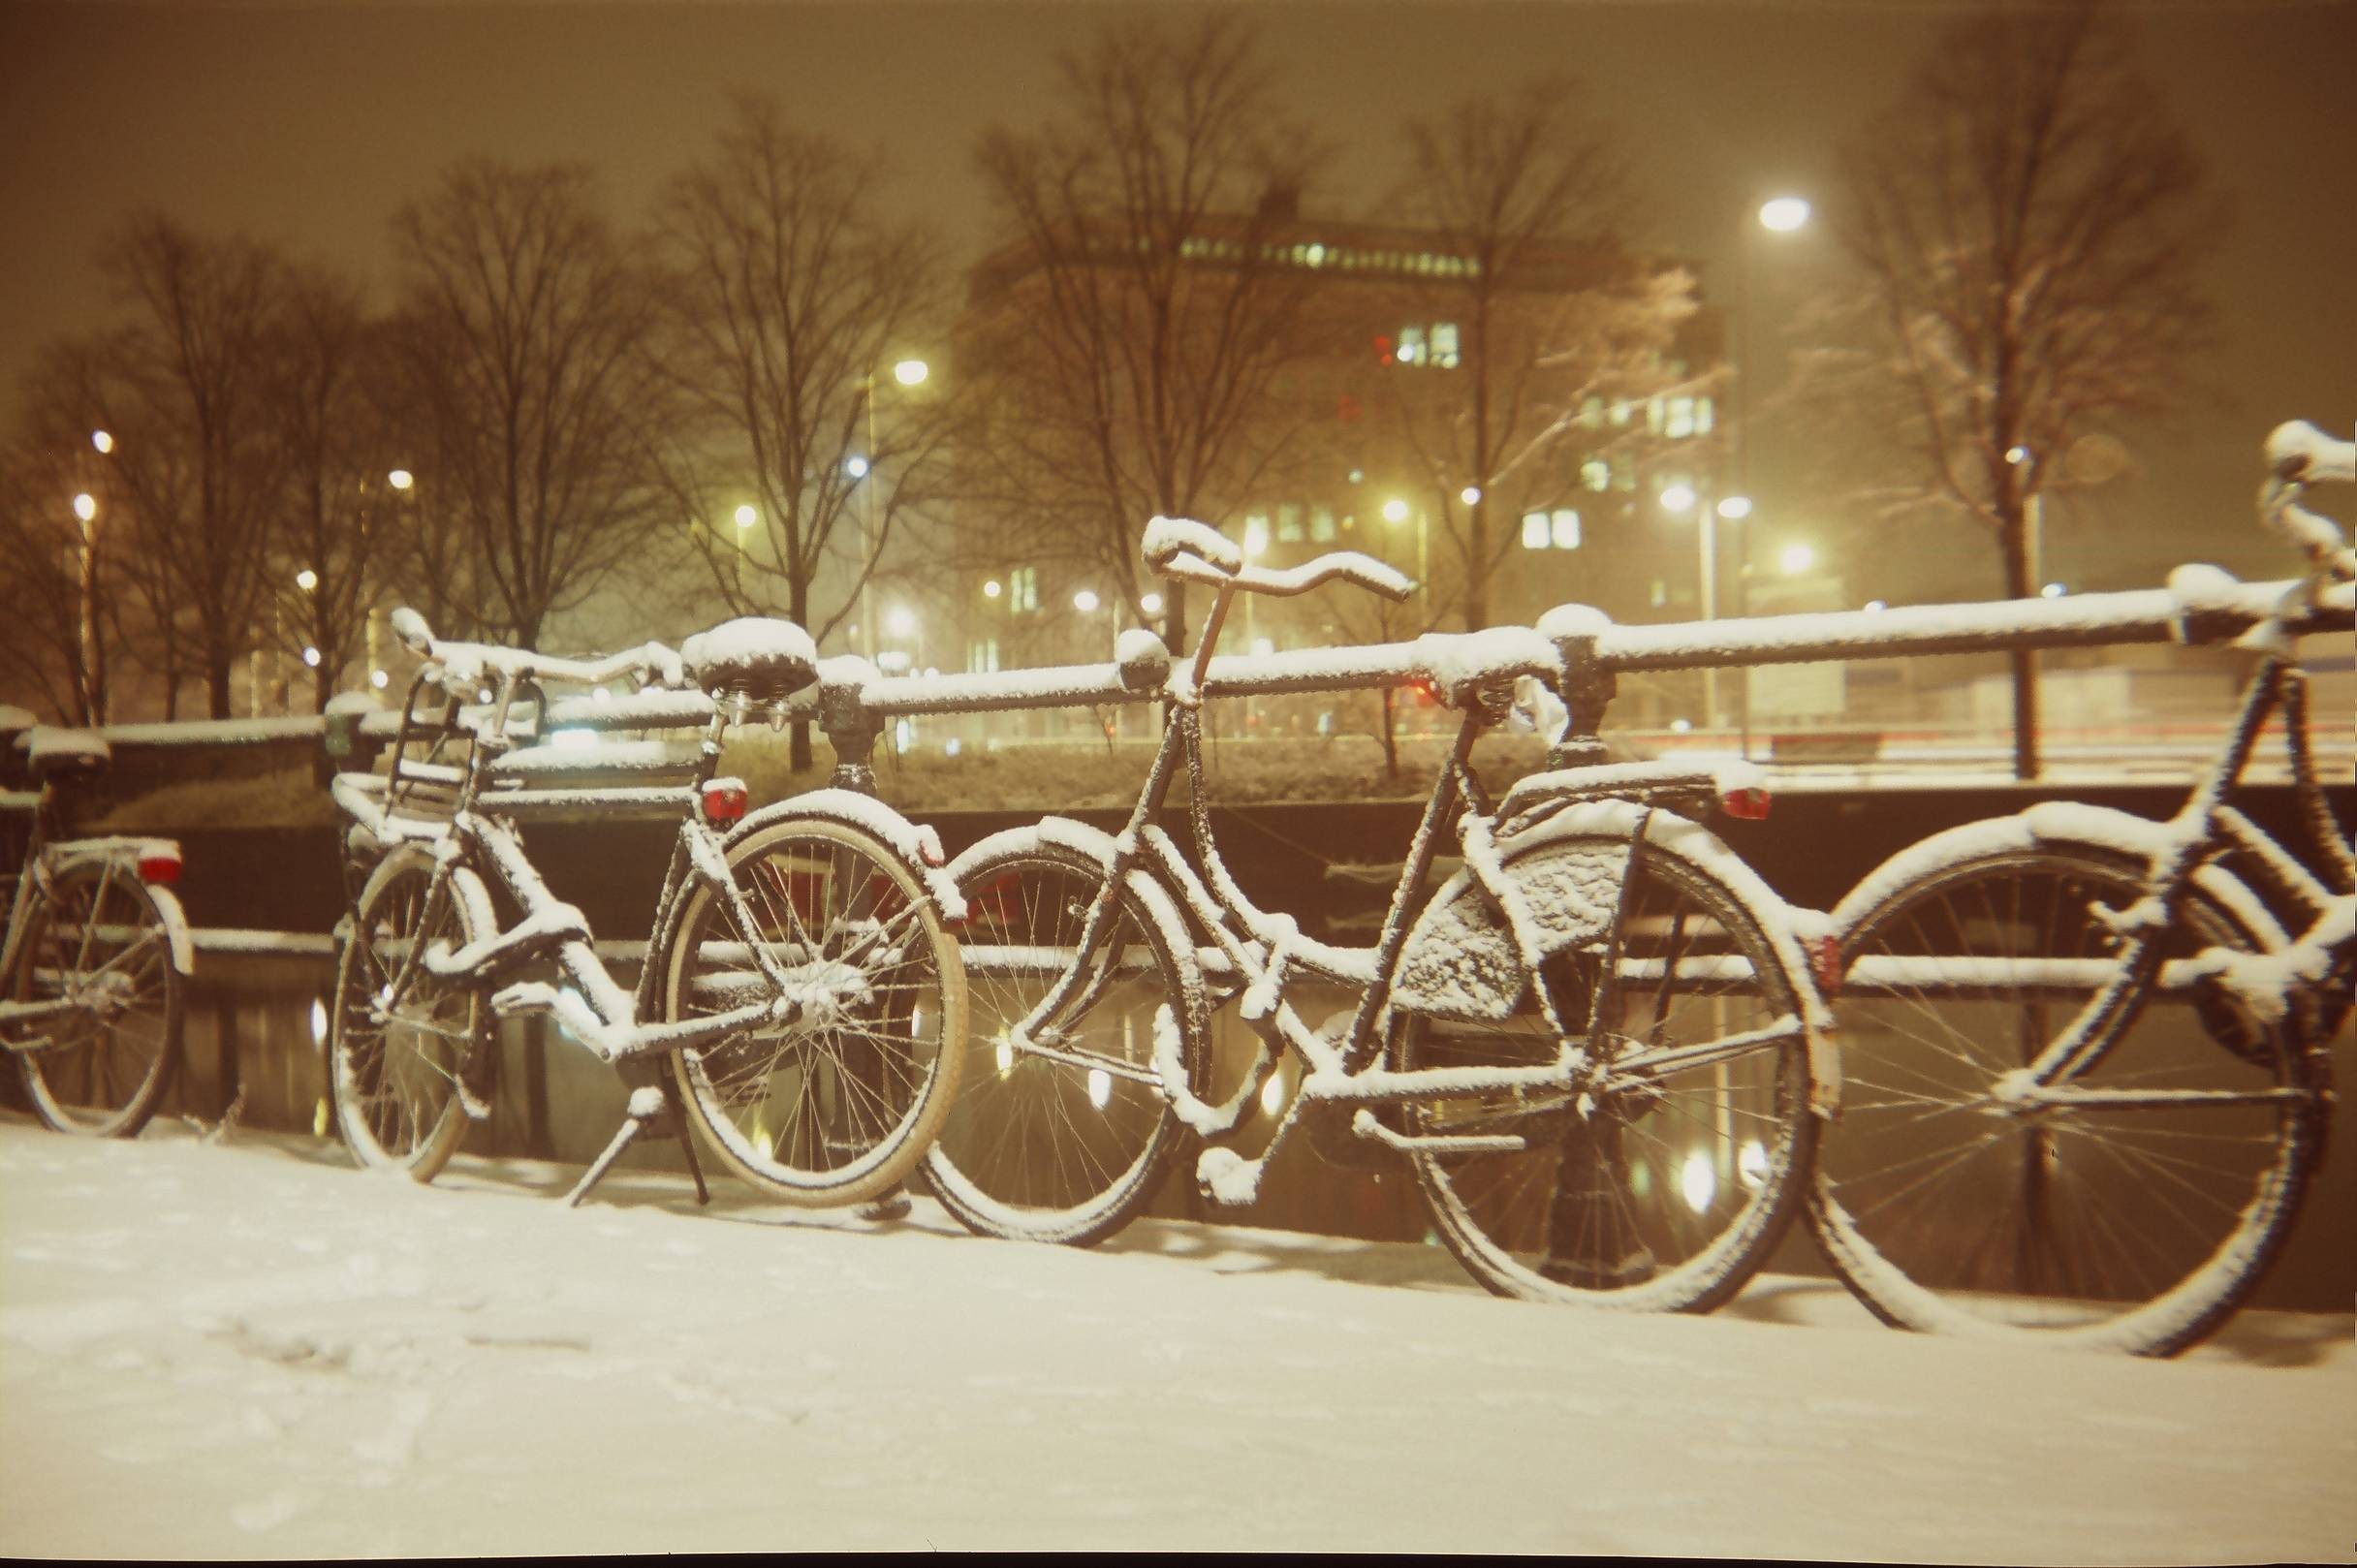 Зимняя сцена с велосипедами. Фотограф paramir